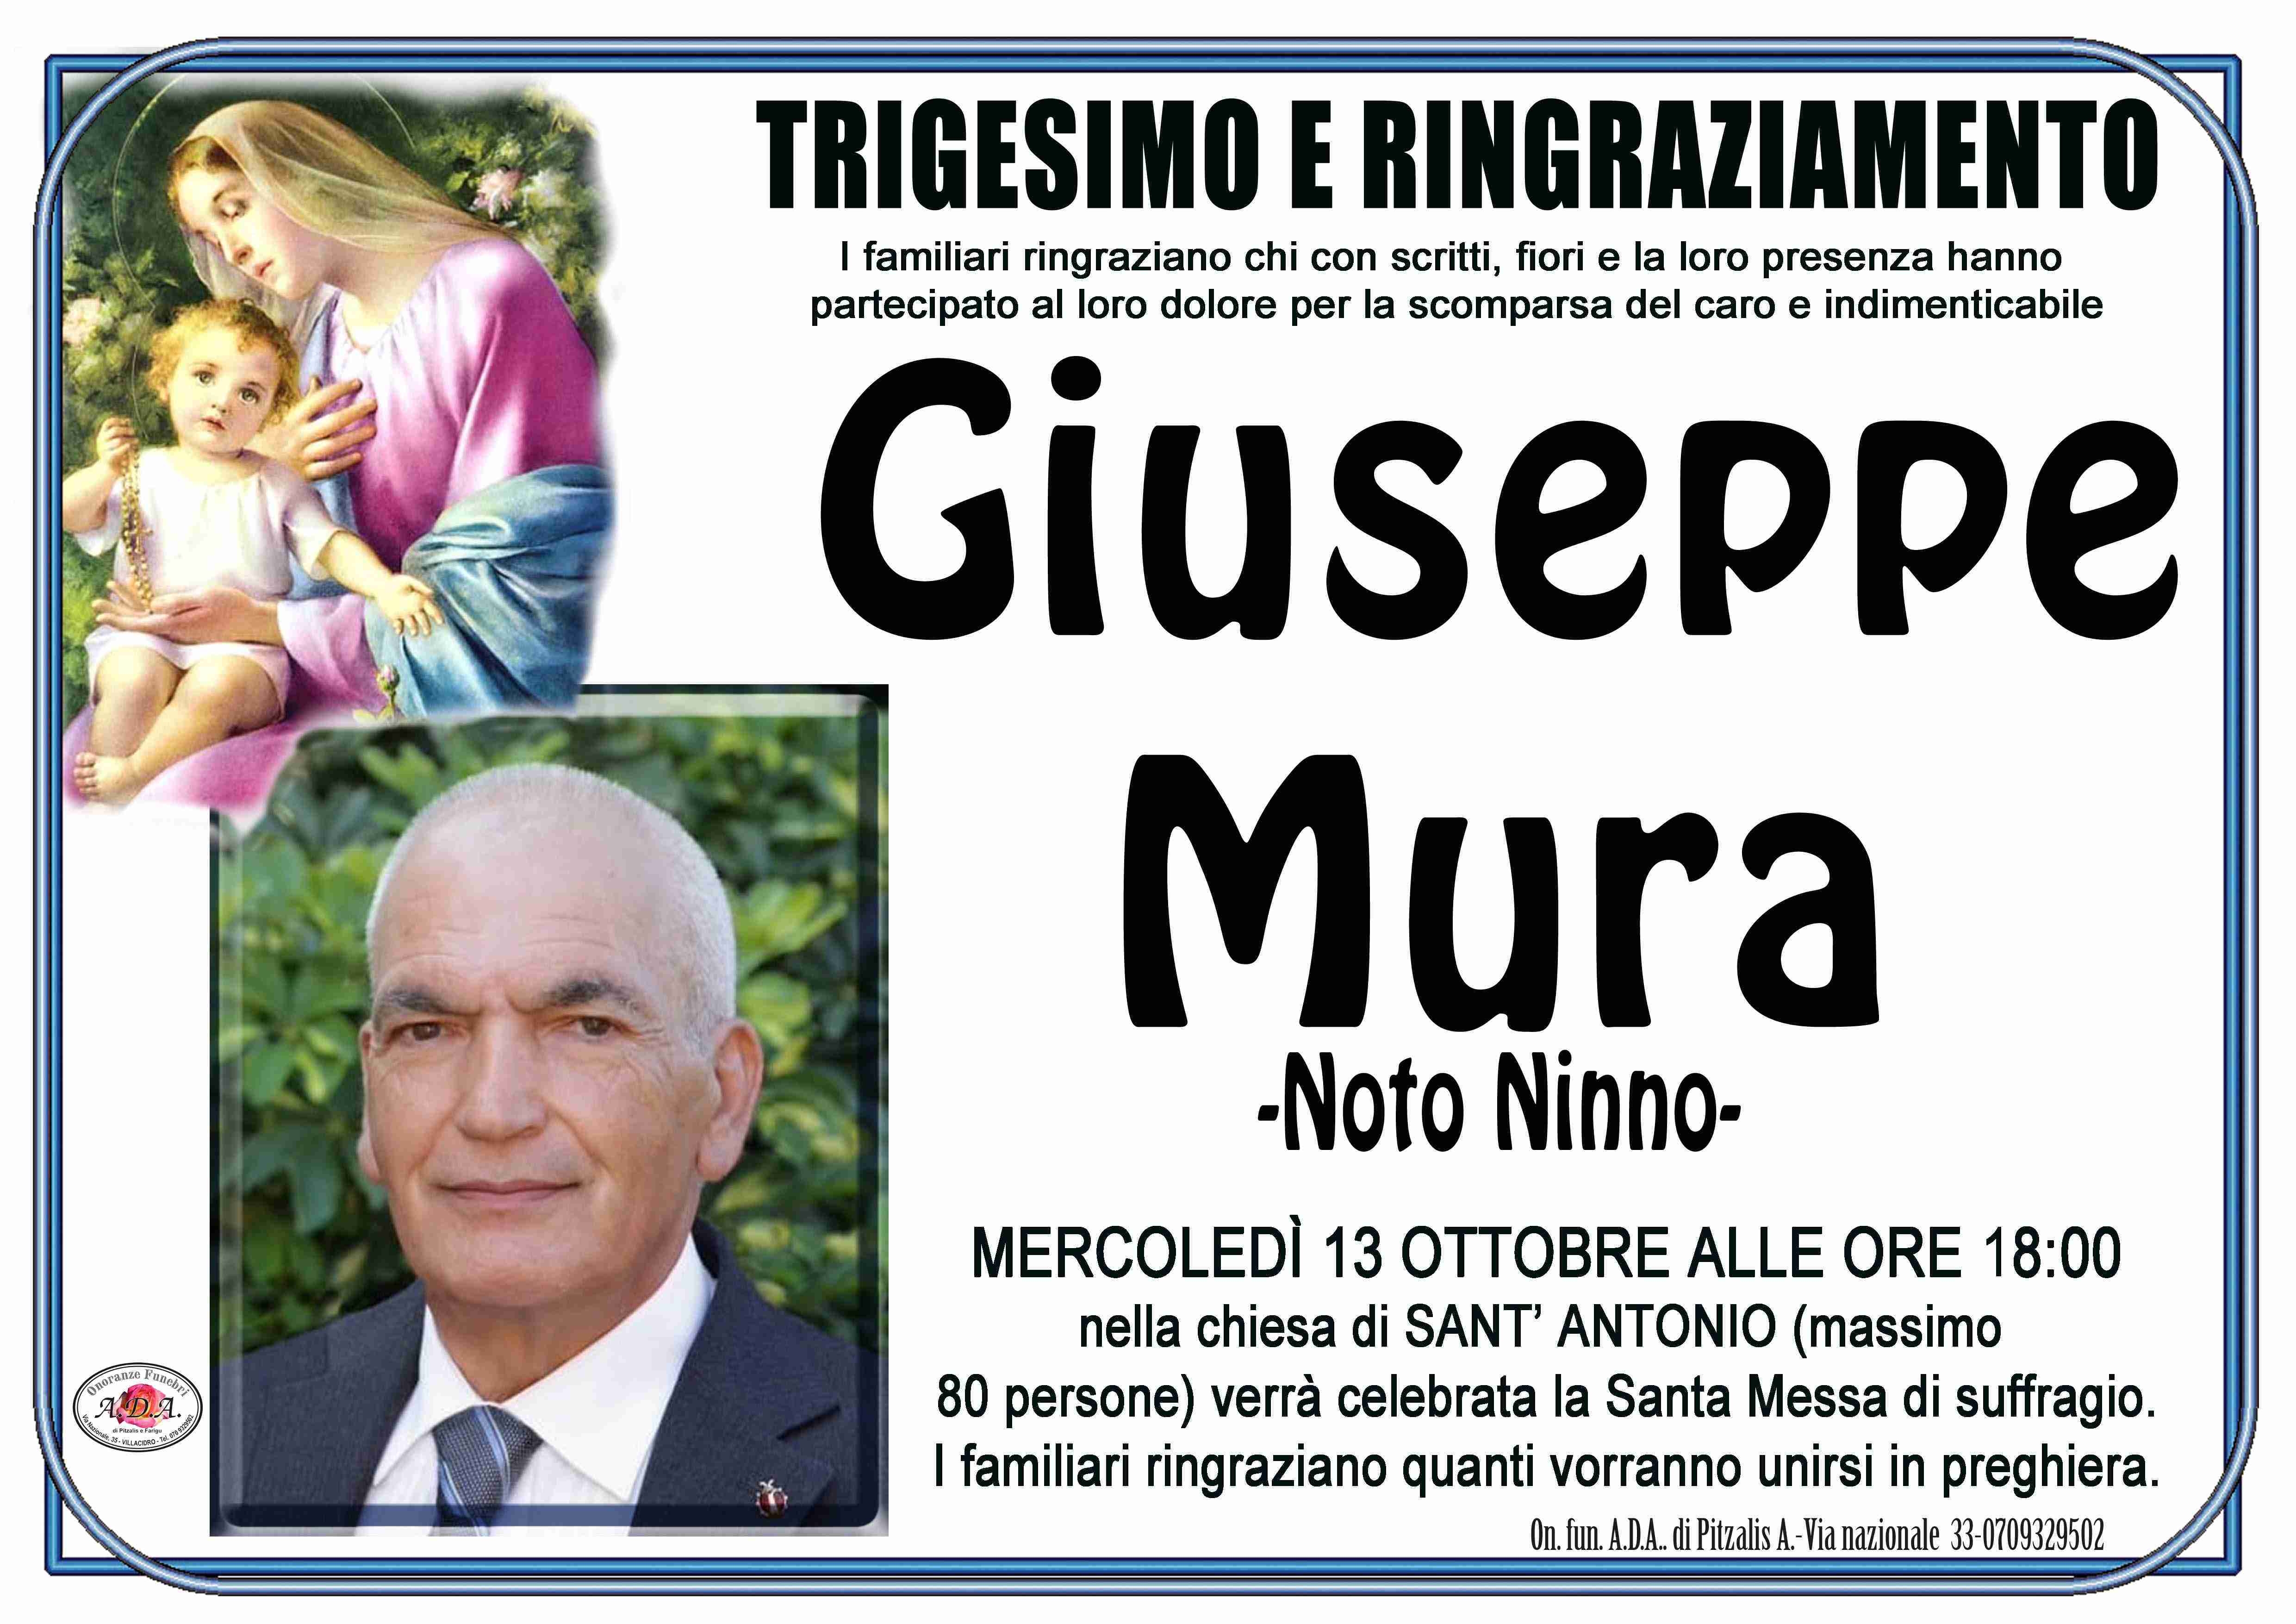 Giuseppe Mura